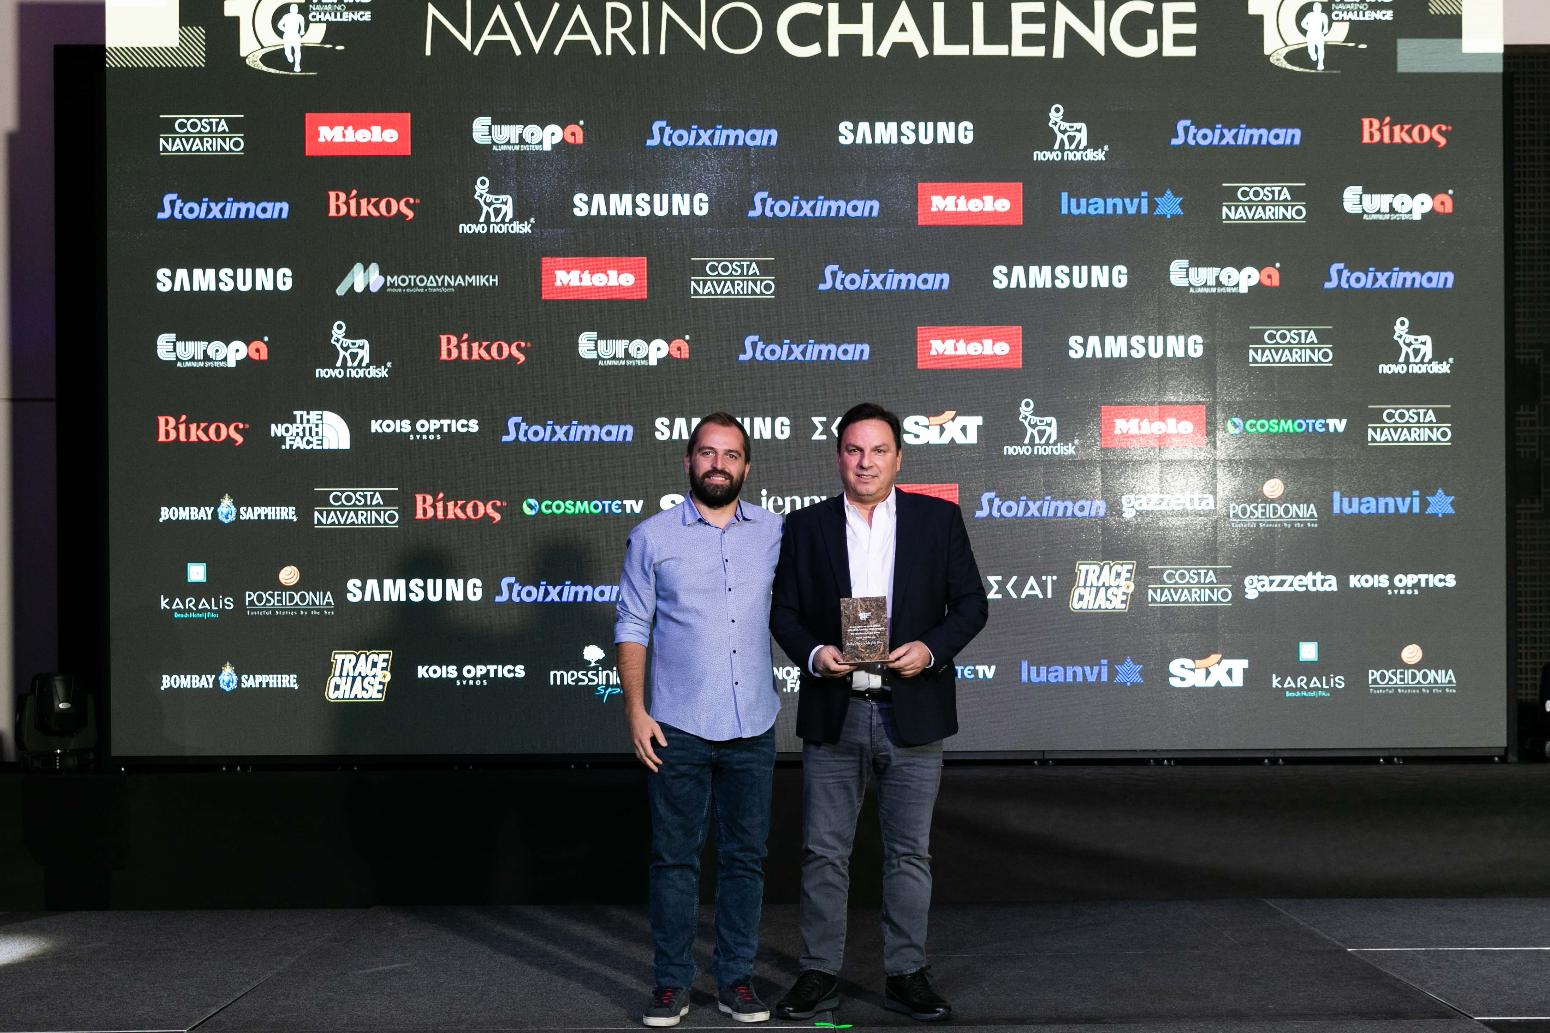 Navarino Challenge: Η αθλητική γιορτή των 10 χρόνων